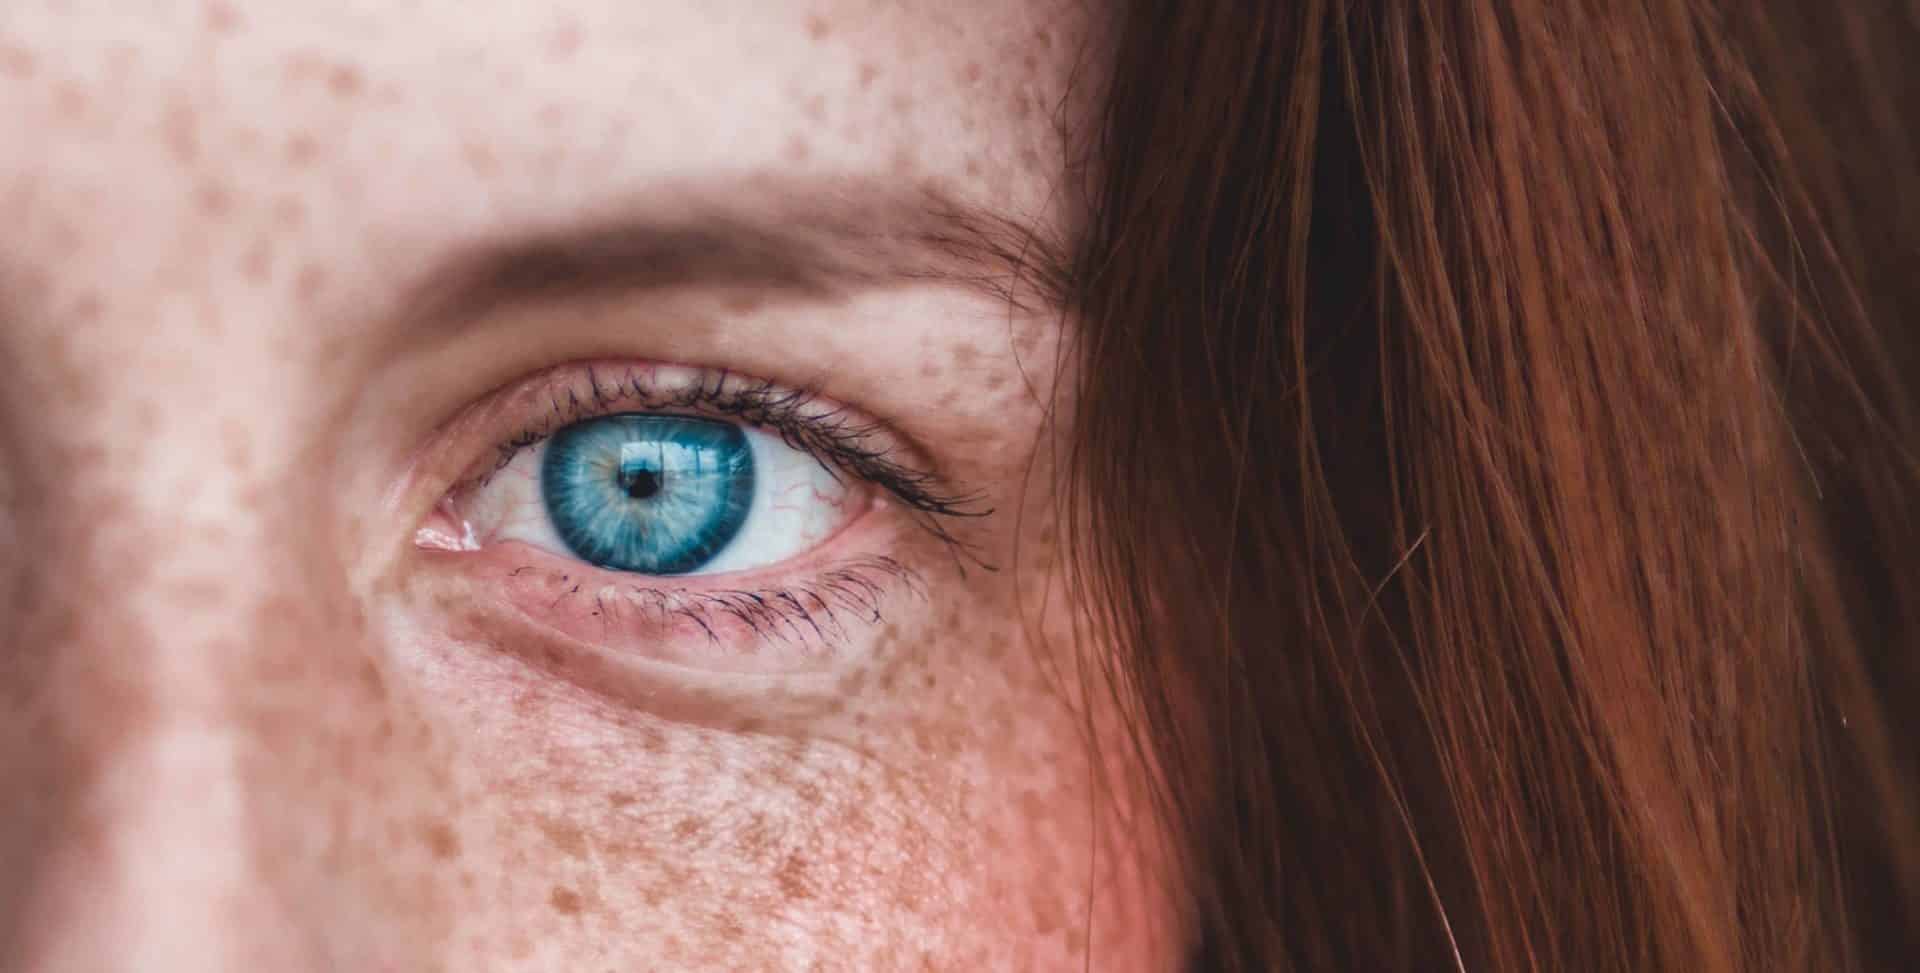 Plave oči – zašto su tako atraktivne i zanimljive?